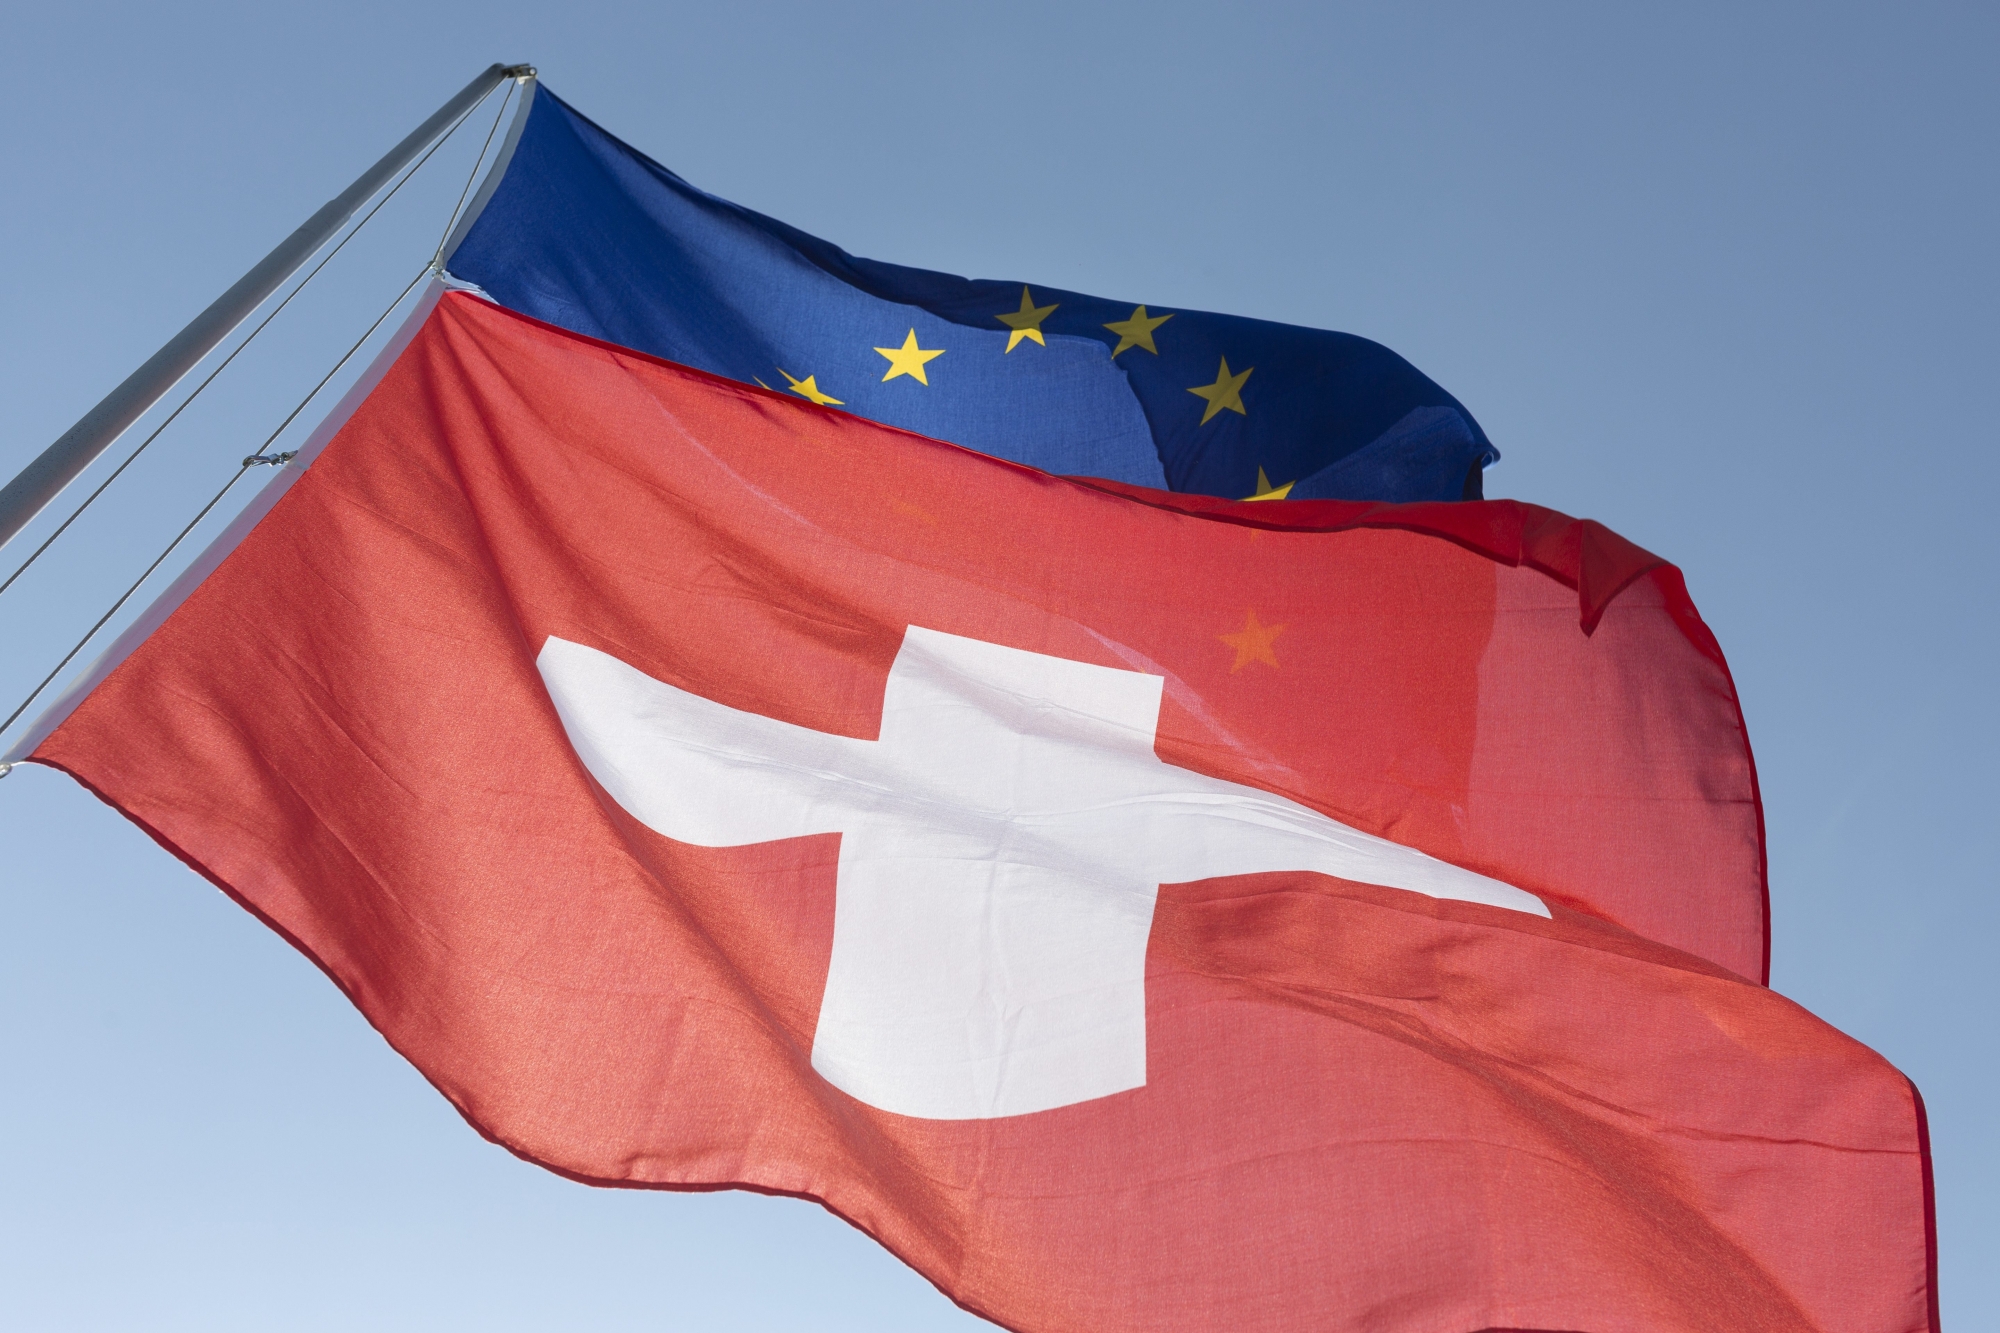 Les accords bilatéraux entre la Suisse et l'Union européenne sont remis en cause.